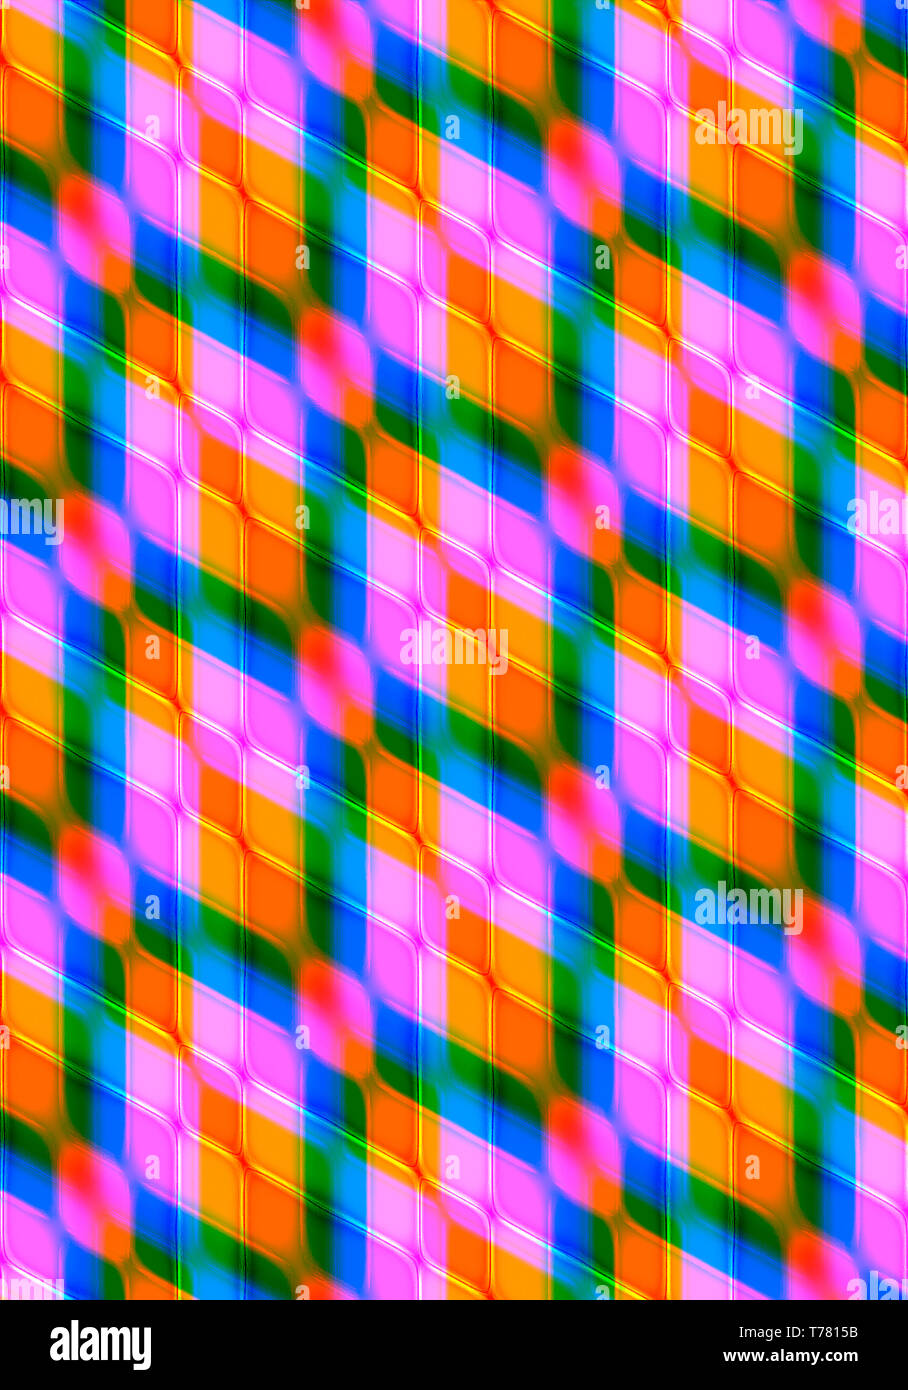 Résumé arrière-plan lumineux, recueillis à un angle d'orange, violet, bleu, vert des losanges, couverts d'intersection en forme de losanges rouges de jaune Banque D'Images